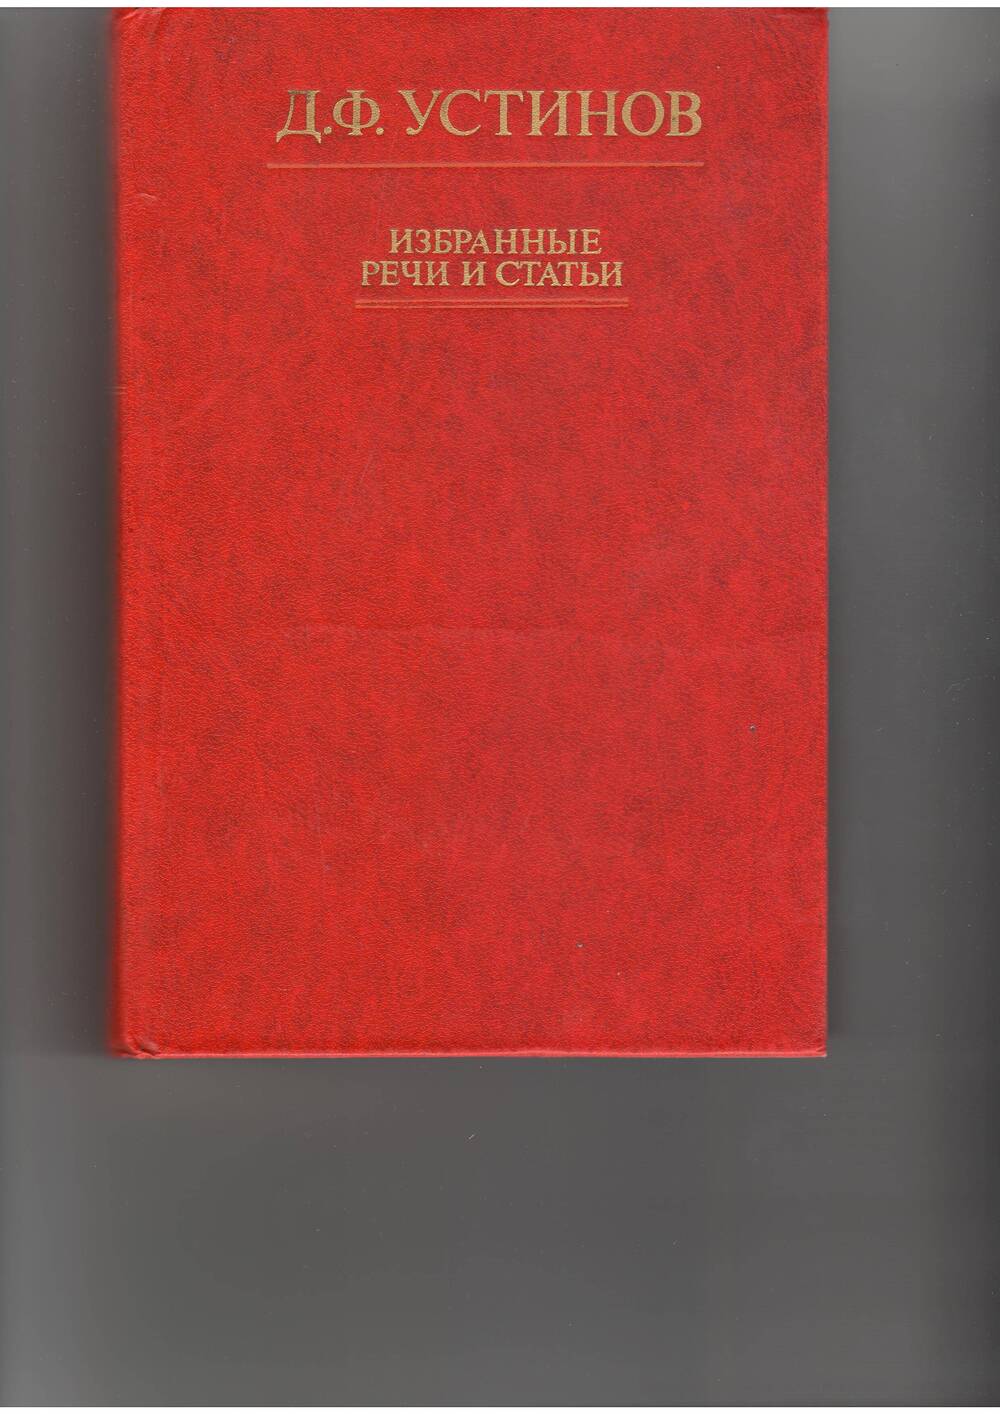 книга  Устинов Д.. Избранные статьи и речи. - М: Политлит,1979.